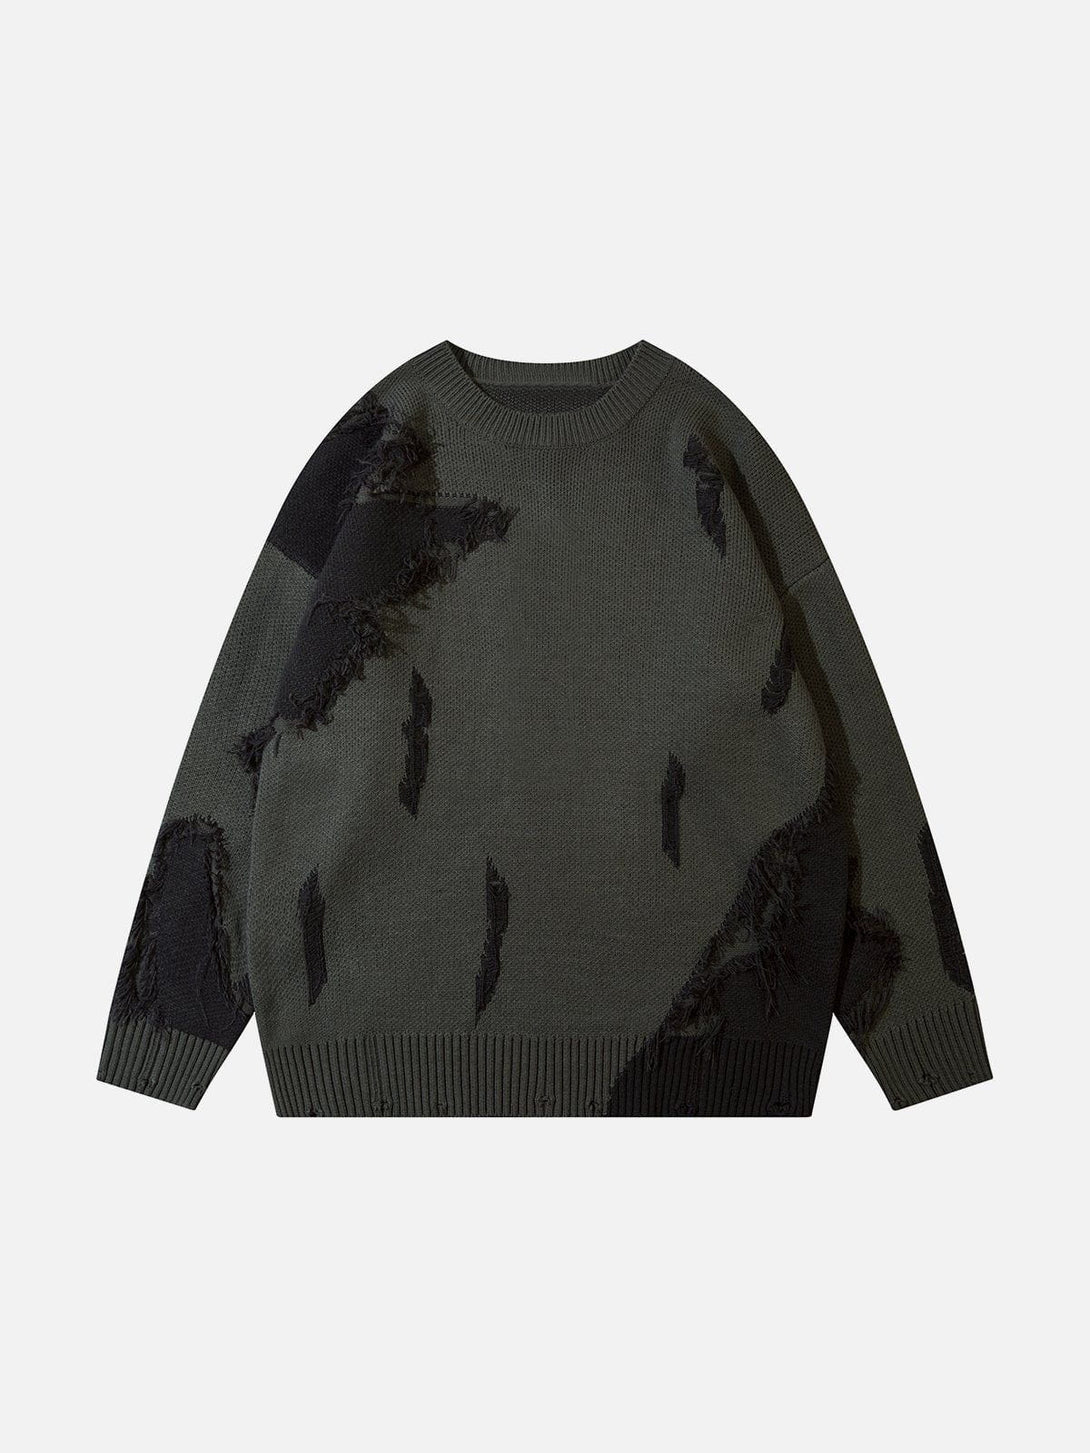 Majesda® - Jacquard Stitching Sweater outfit ideas streetwear fashion